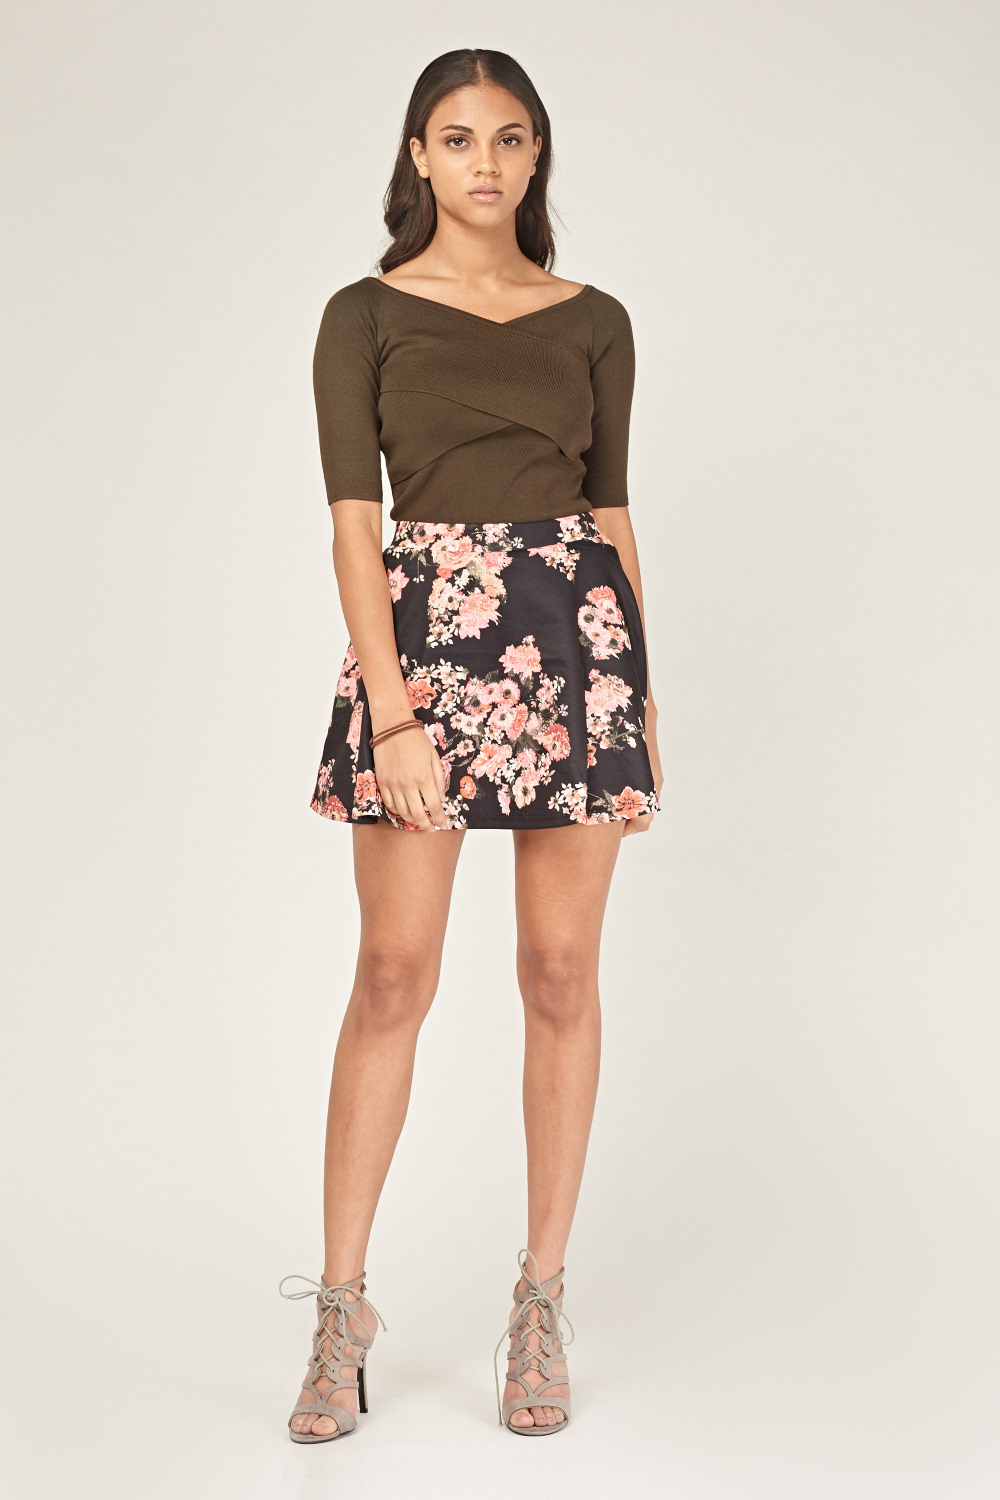 Floral Mini Skater Skirt - Just $7